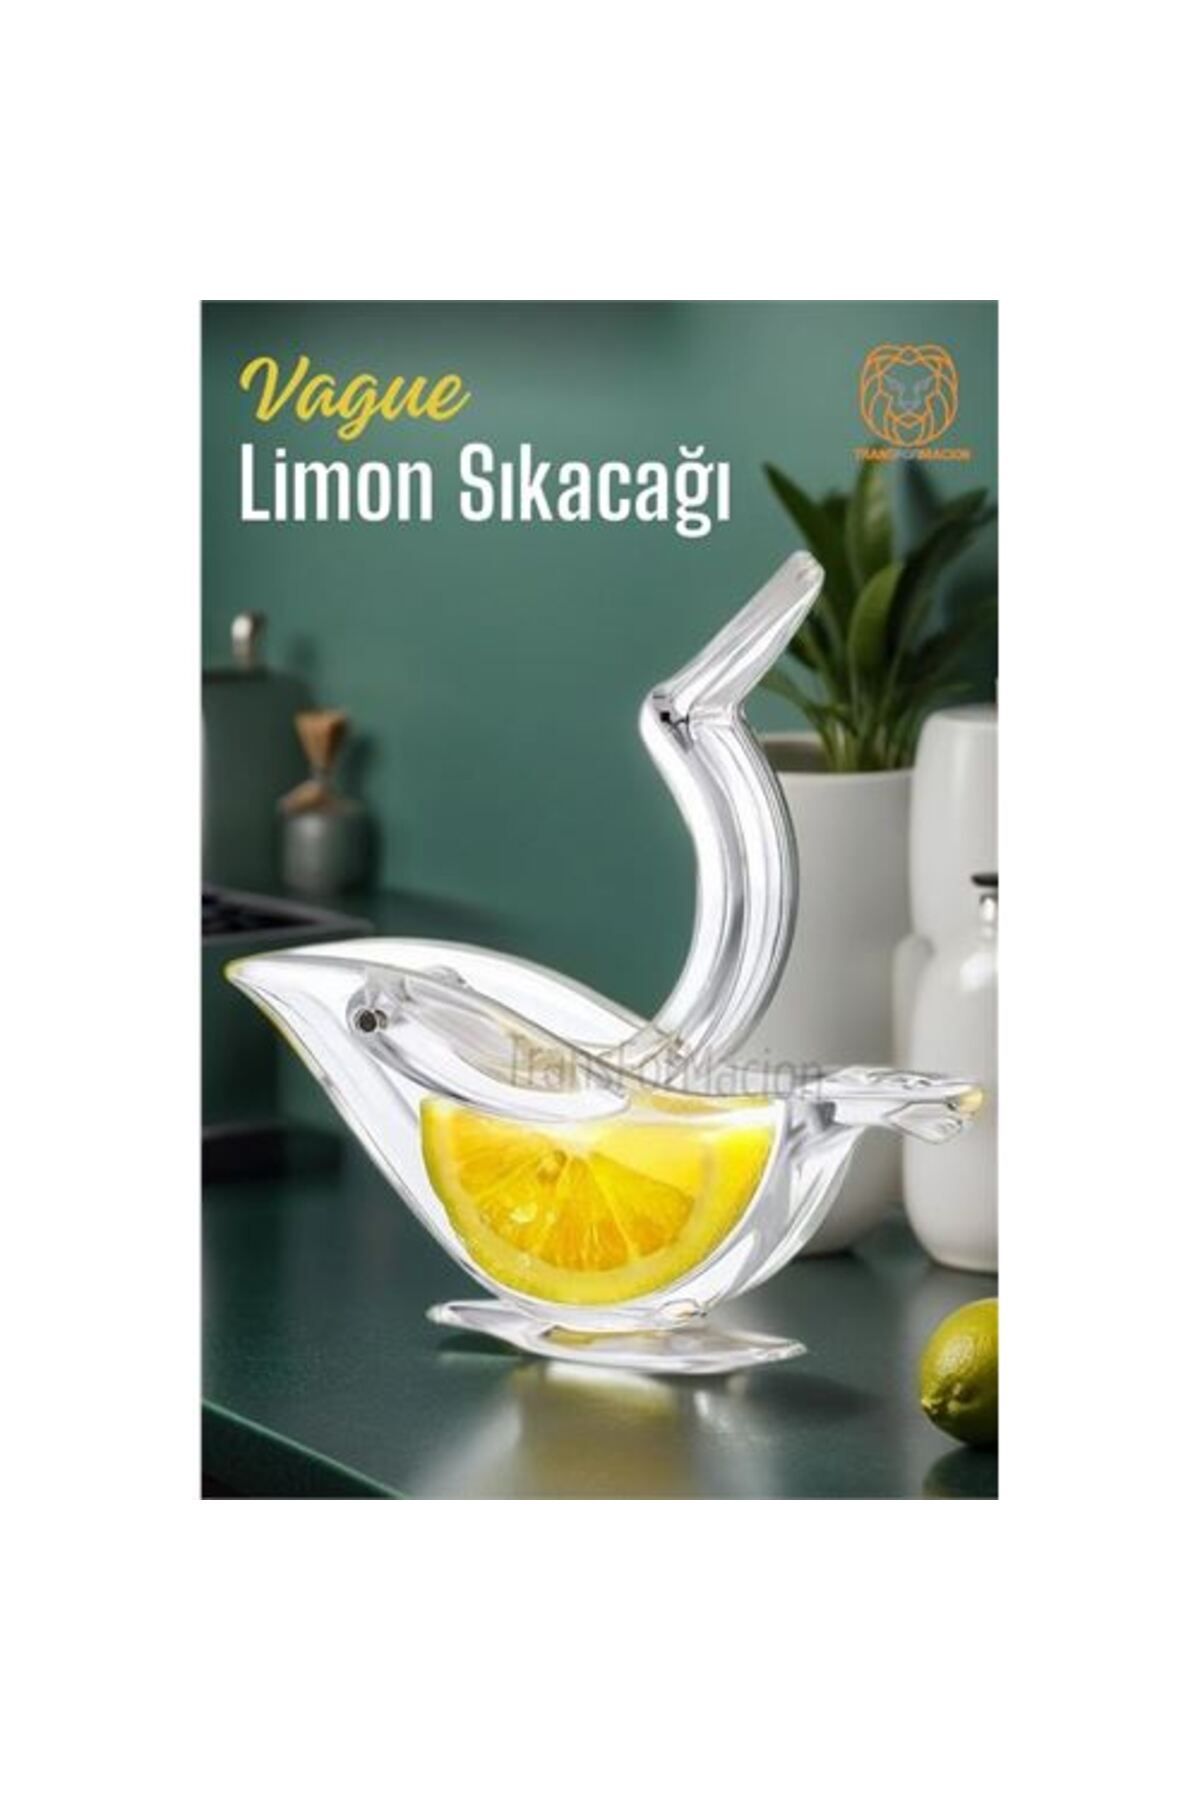 ShopZum Taze Limon Sıkacağı Vague Design 720329